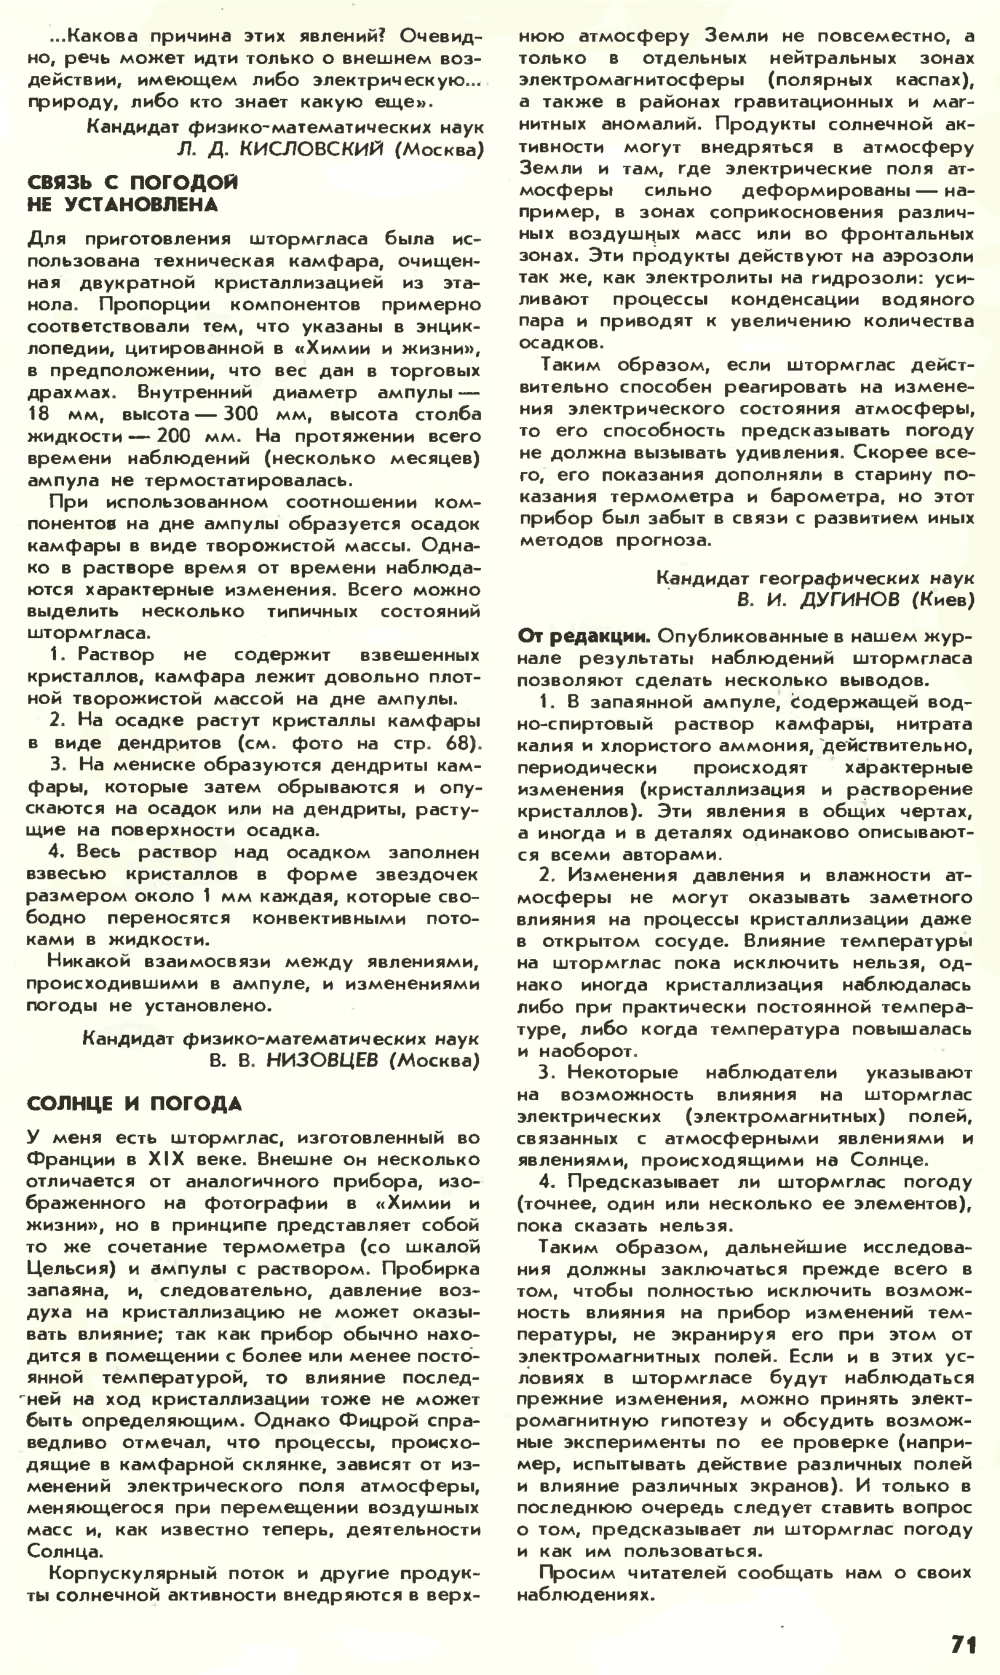 Штормгласс — легенда или реальность? Химия и жизнь, 1980, №2, с.68-71. Фотокопия №4